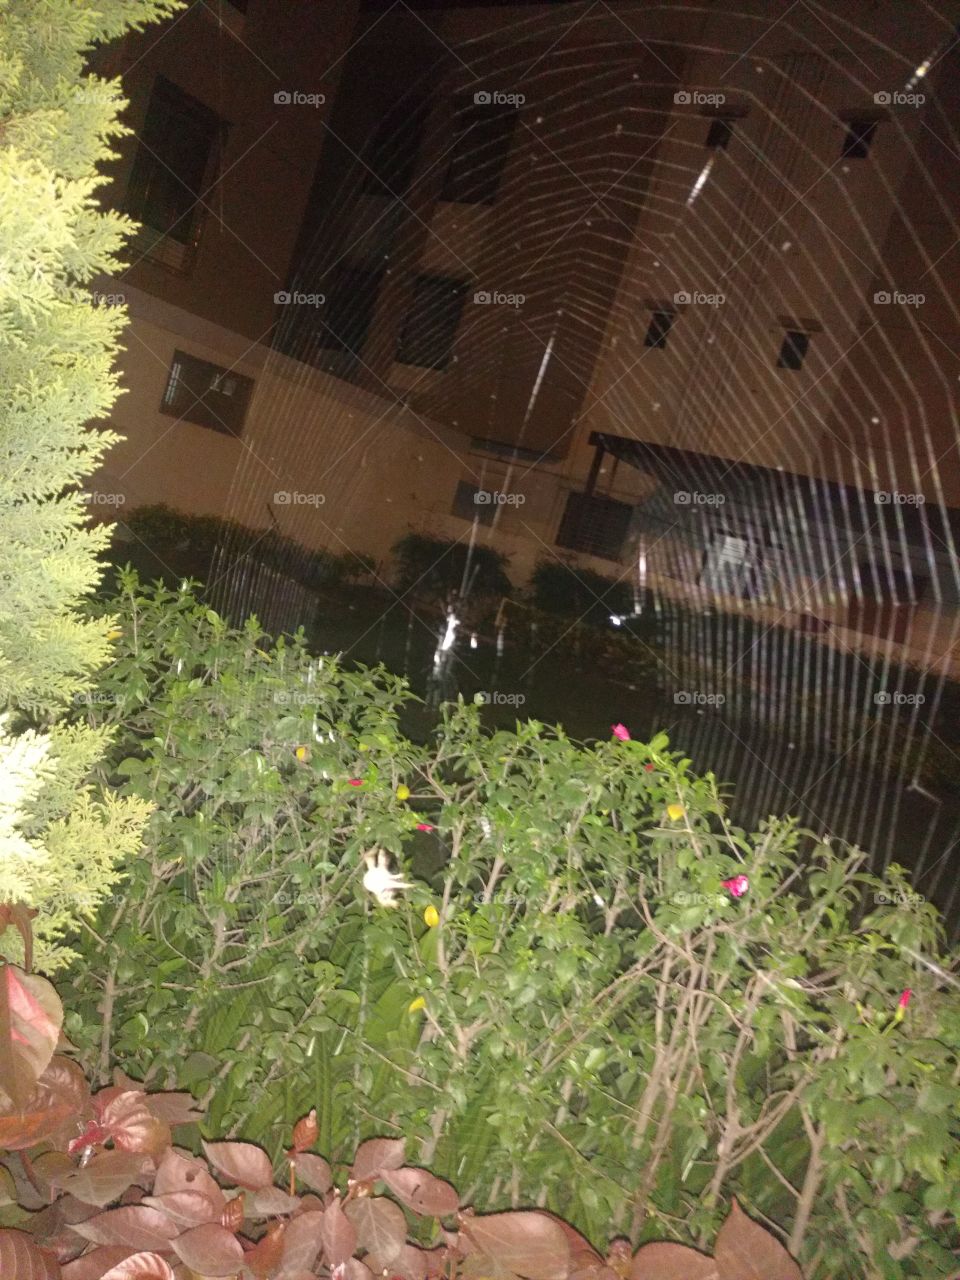 Spider's Web in the garden